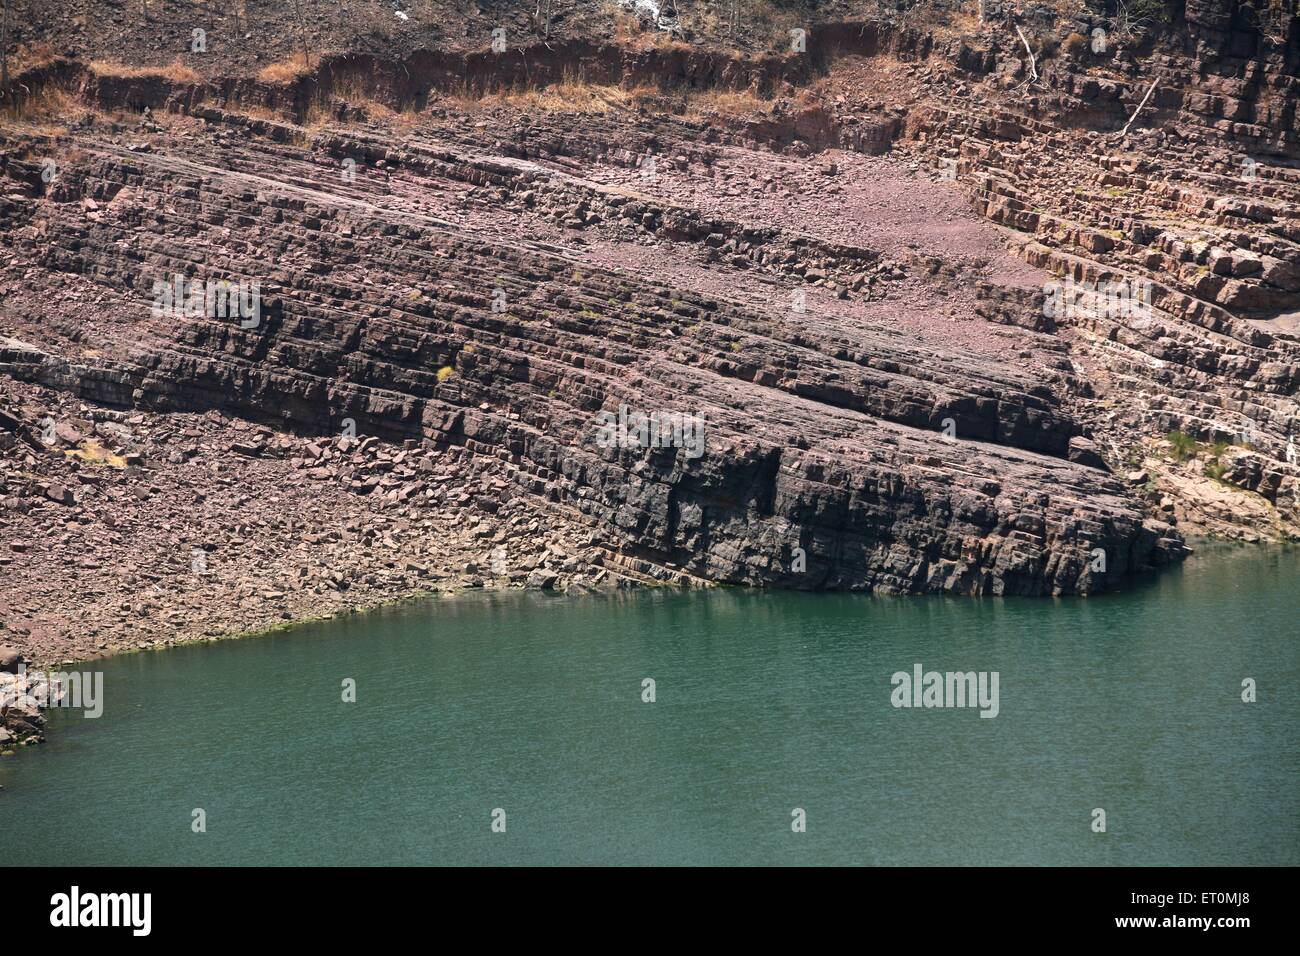 volcanic rocks, Narmada river, Khandwa, Madhya Pradesh, India Stock Photo